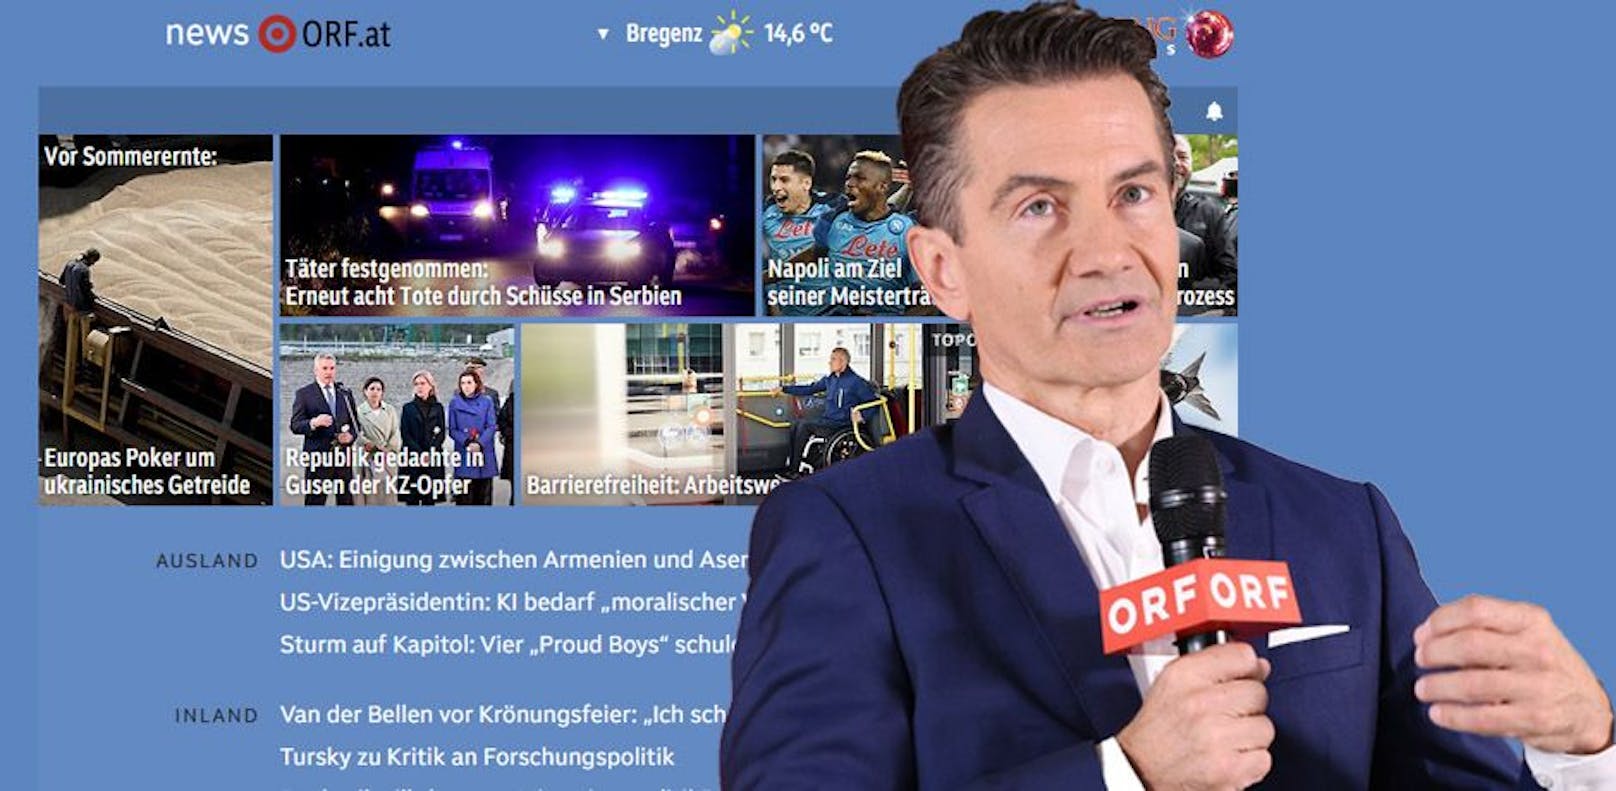 Auf der ORF.at-Website wurden Änderungen vorgenommen.